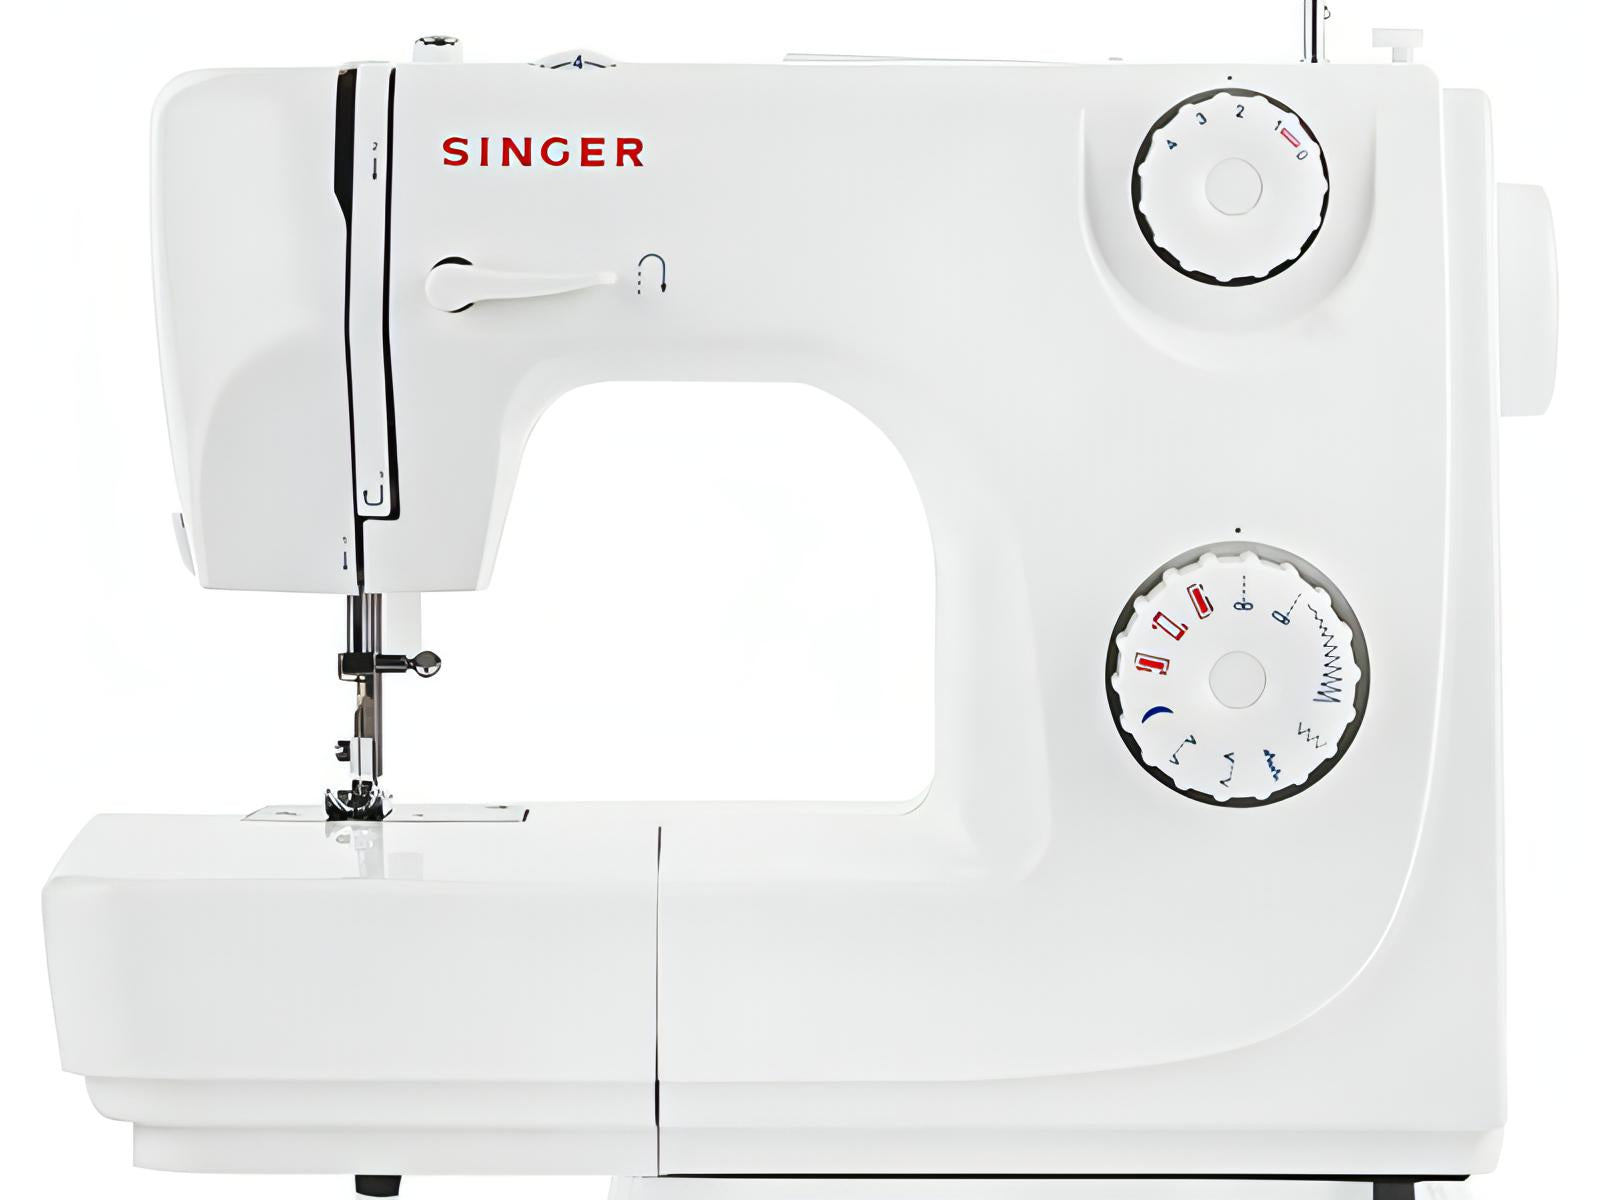 Singer Class 82 - Lightweight and strong machine - sews silk to denim